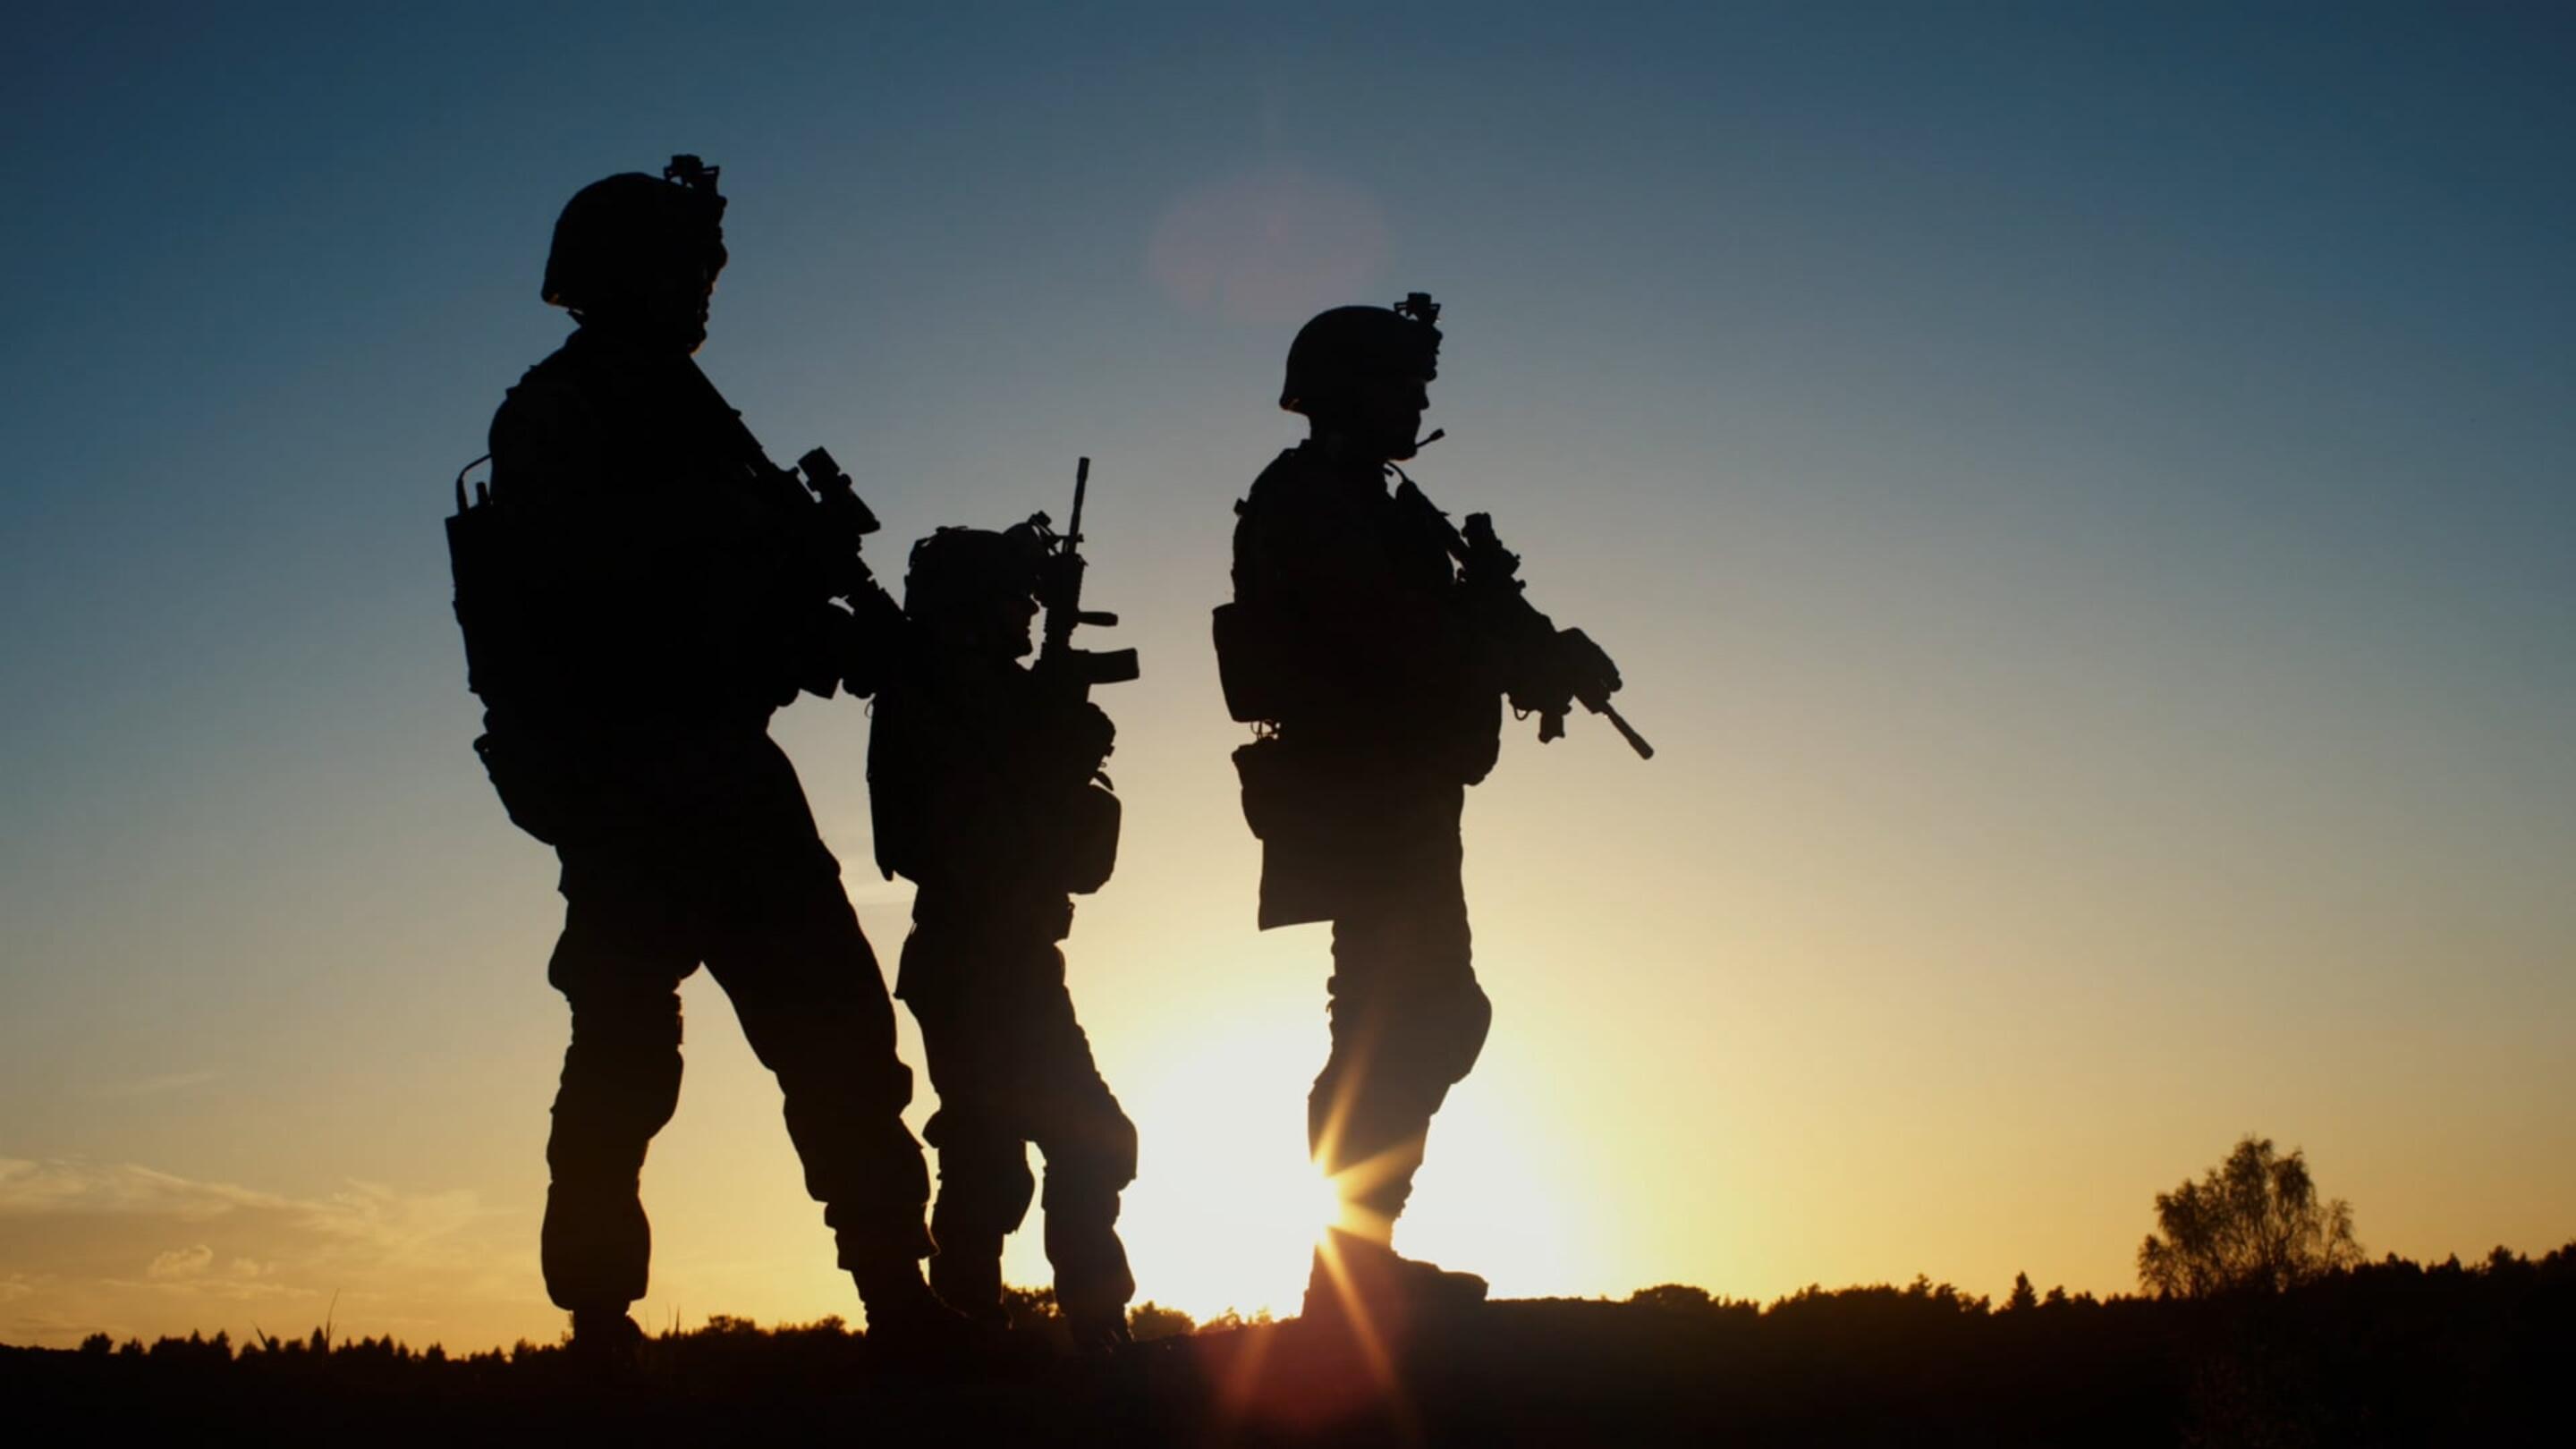 Military - Vojáci Armáda skupina vojáků držících zbraně